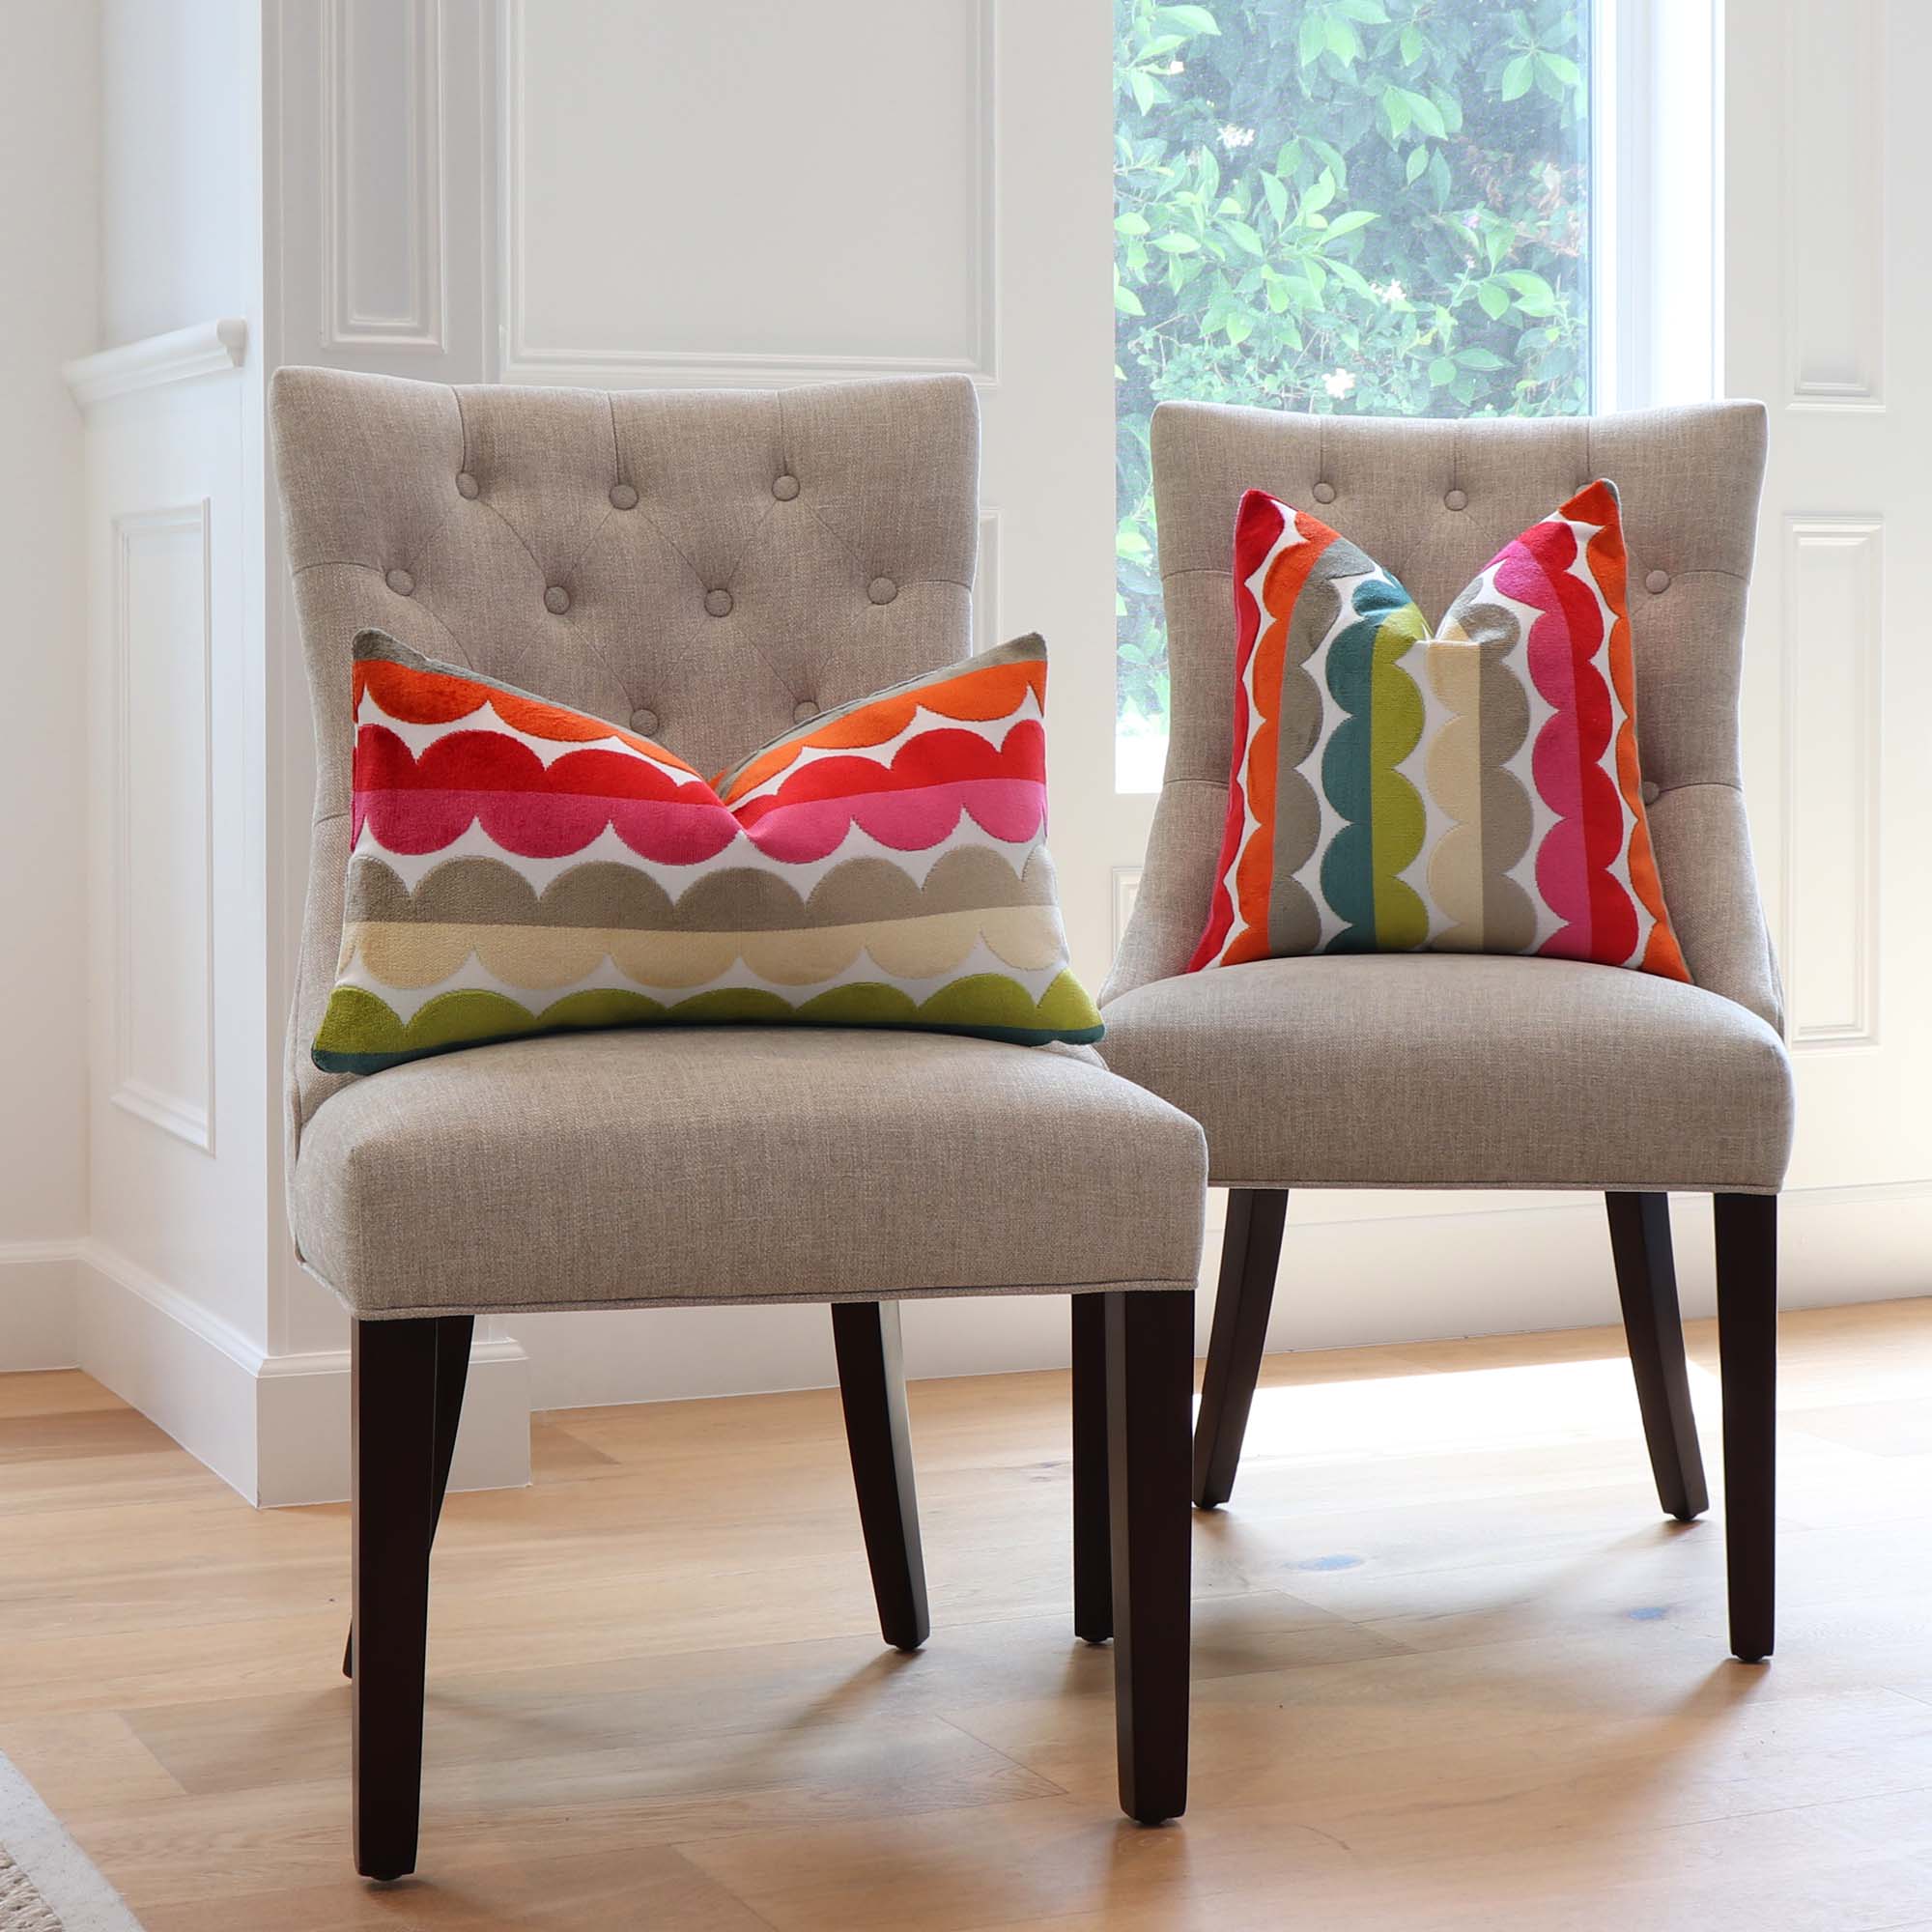 https://www.chloeandolive.com/cdn/shop/products/kravet-jonathan-adler-velvet-stripe-curvy-32165517-luxury-designer-decorative-throw-pillow-cover-on-dining-chairs-in-home_5000x.jpg?v=1655053918